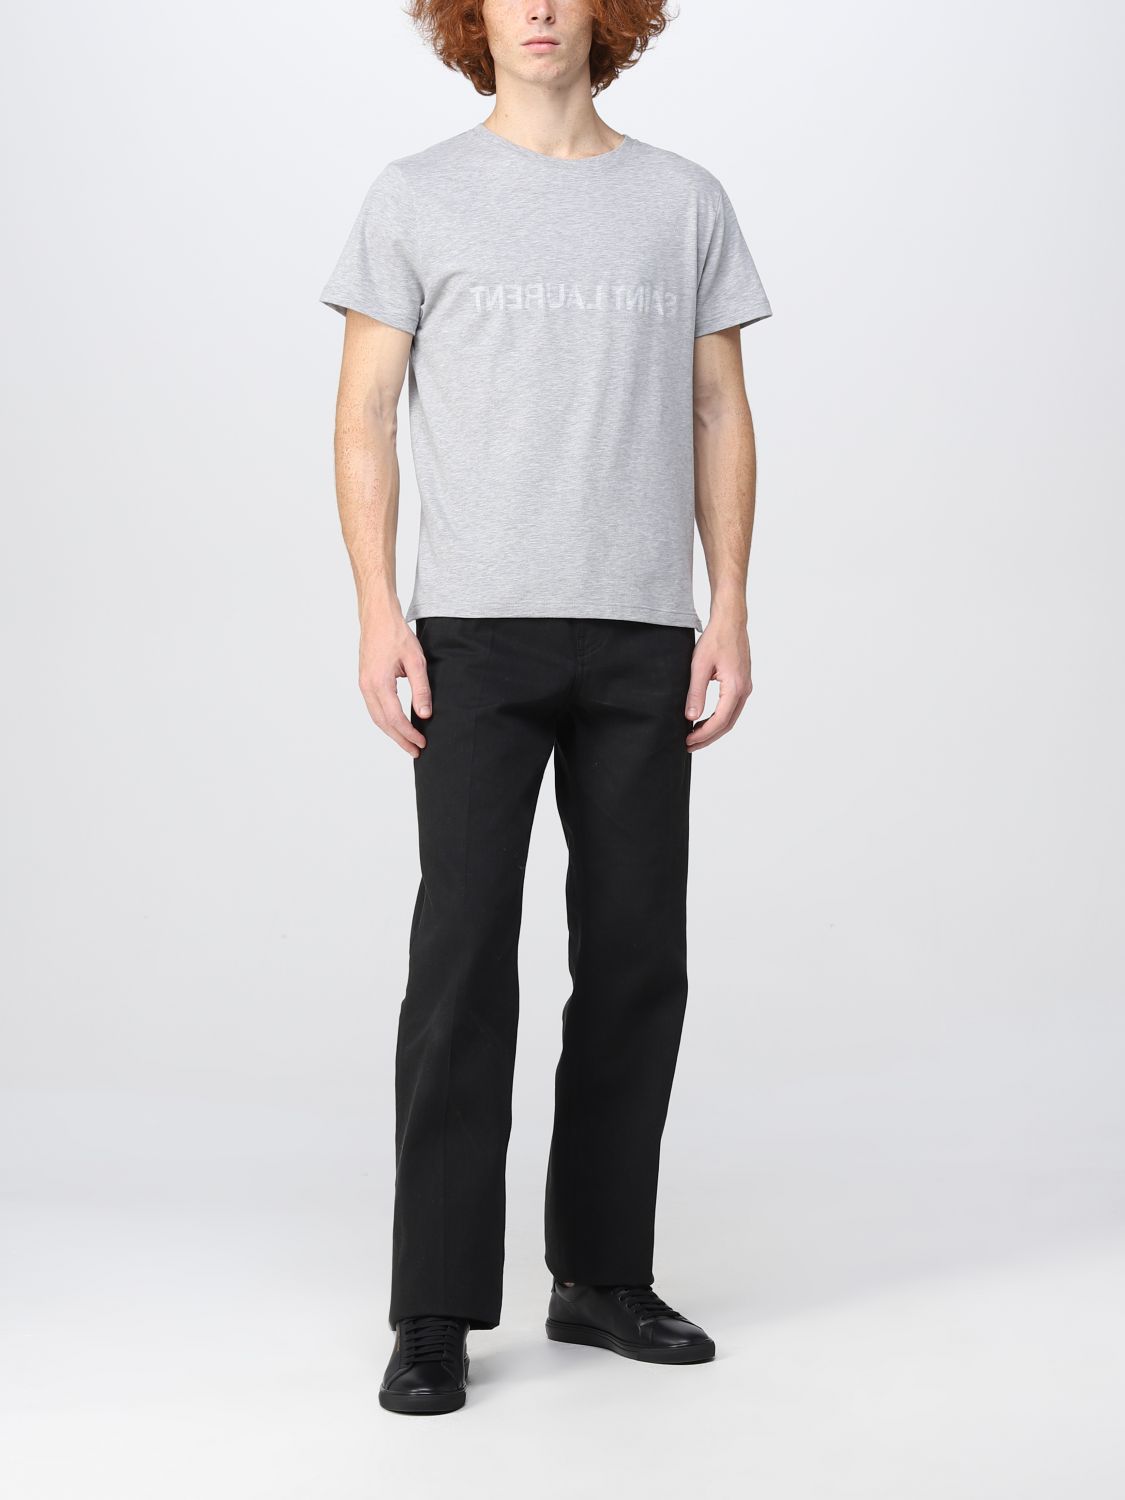 T-shirt Saint Laurent: Saint Laurent t-shirt for man grey 2